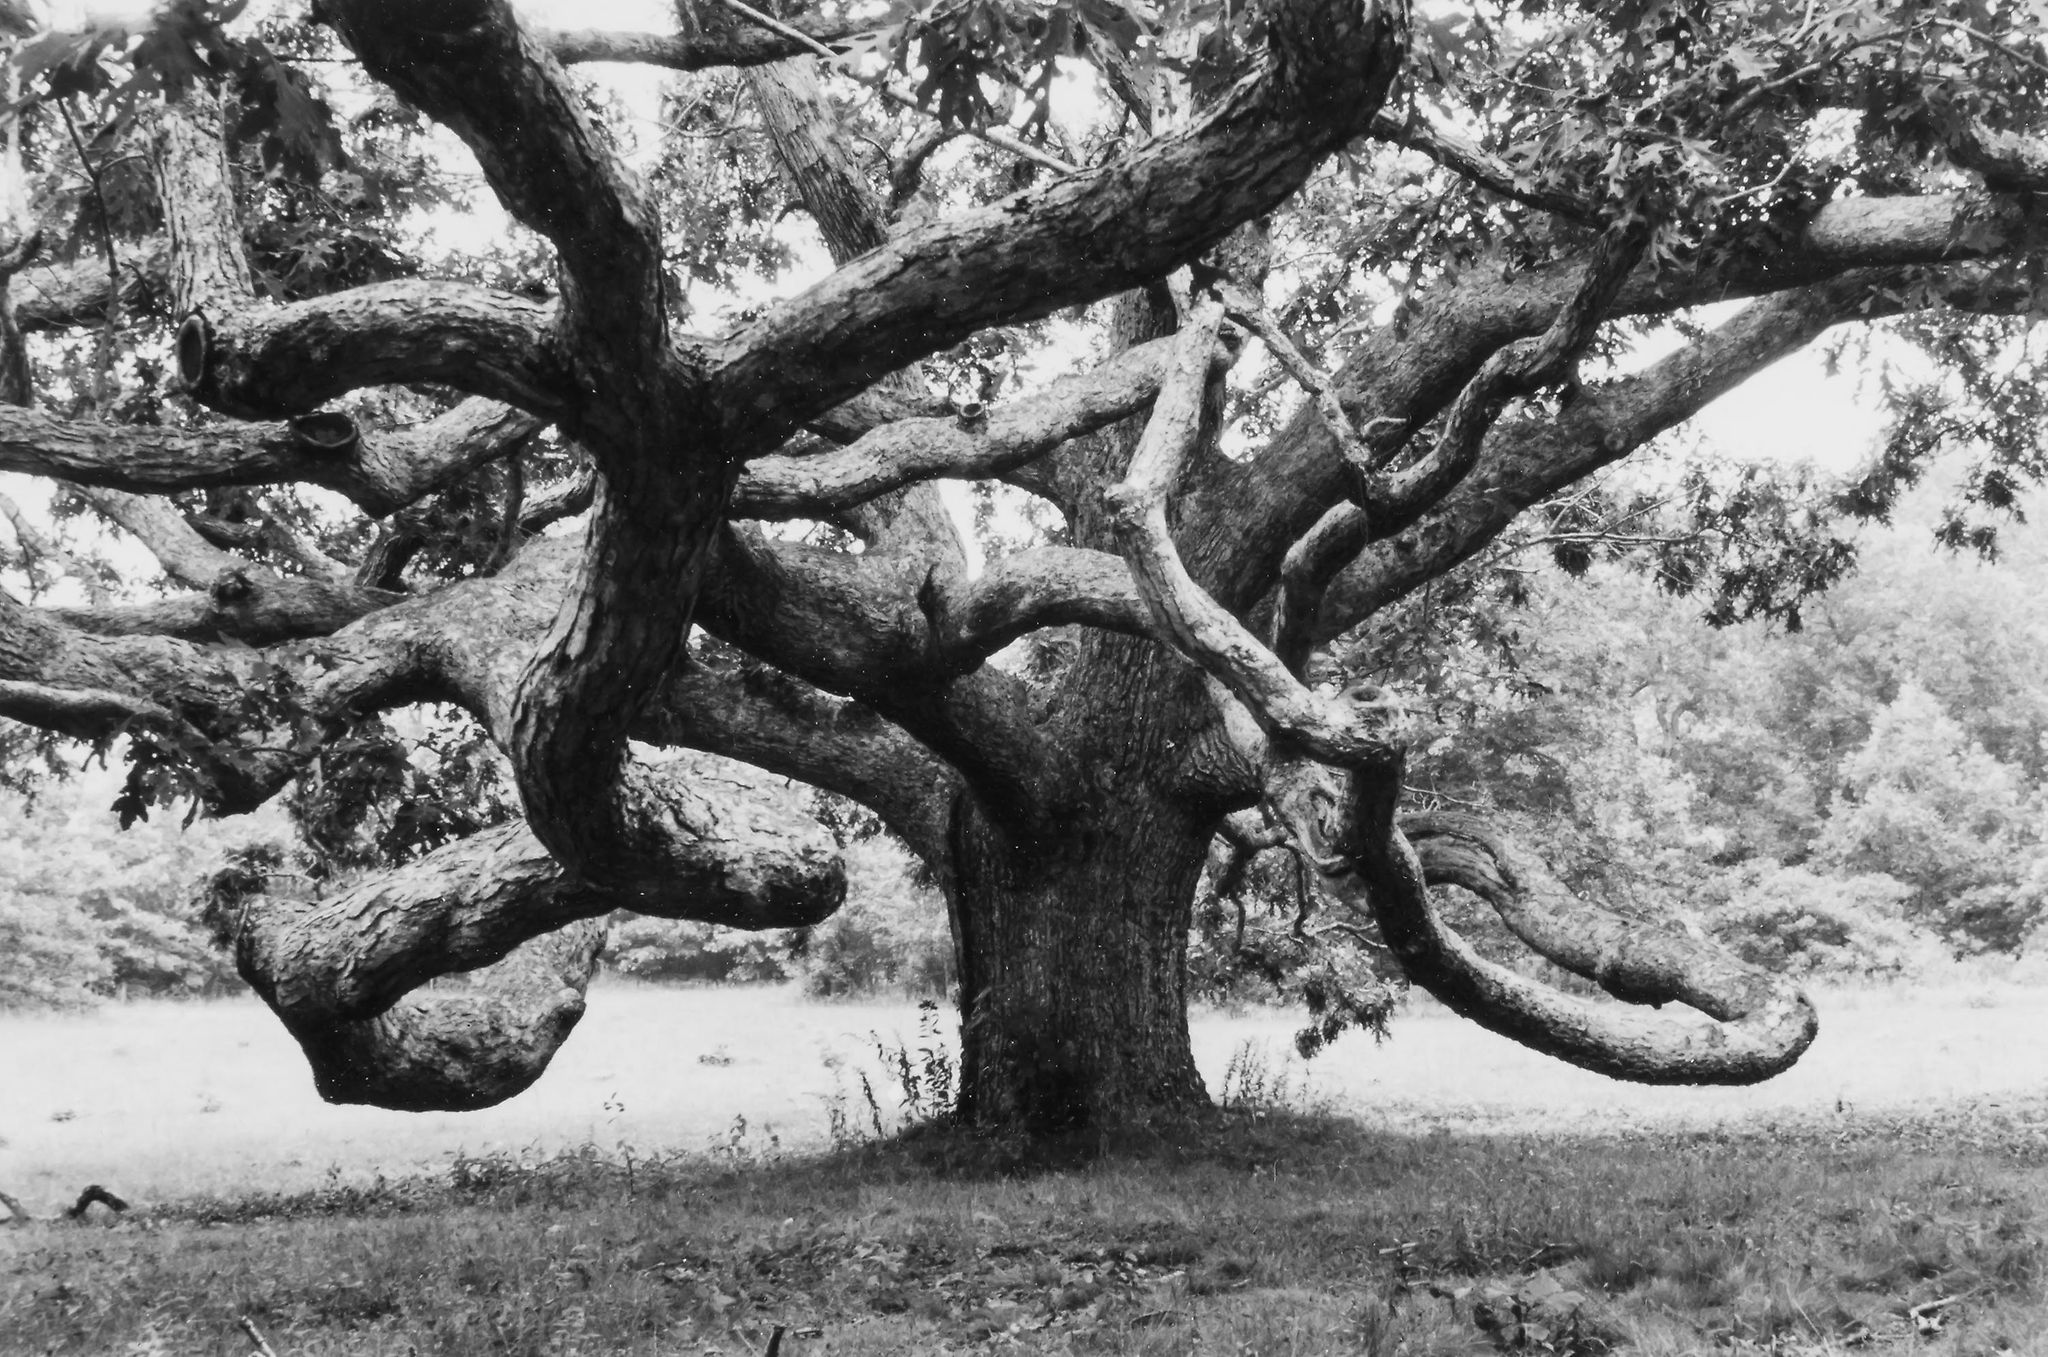 Alfred Eisenstaedt (1898-1995) - Autumn Morning at White Sulphur Springs, W.VA, 1937; Giant Oak in